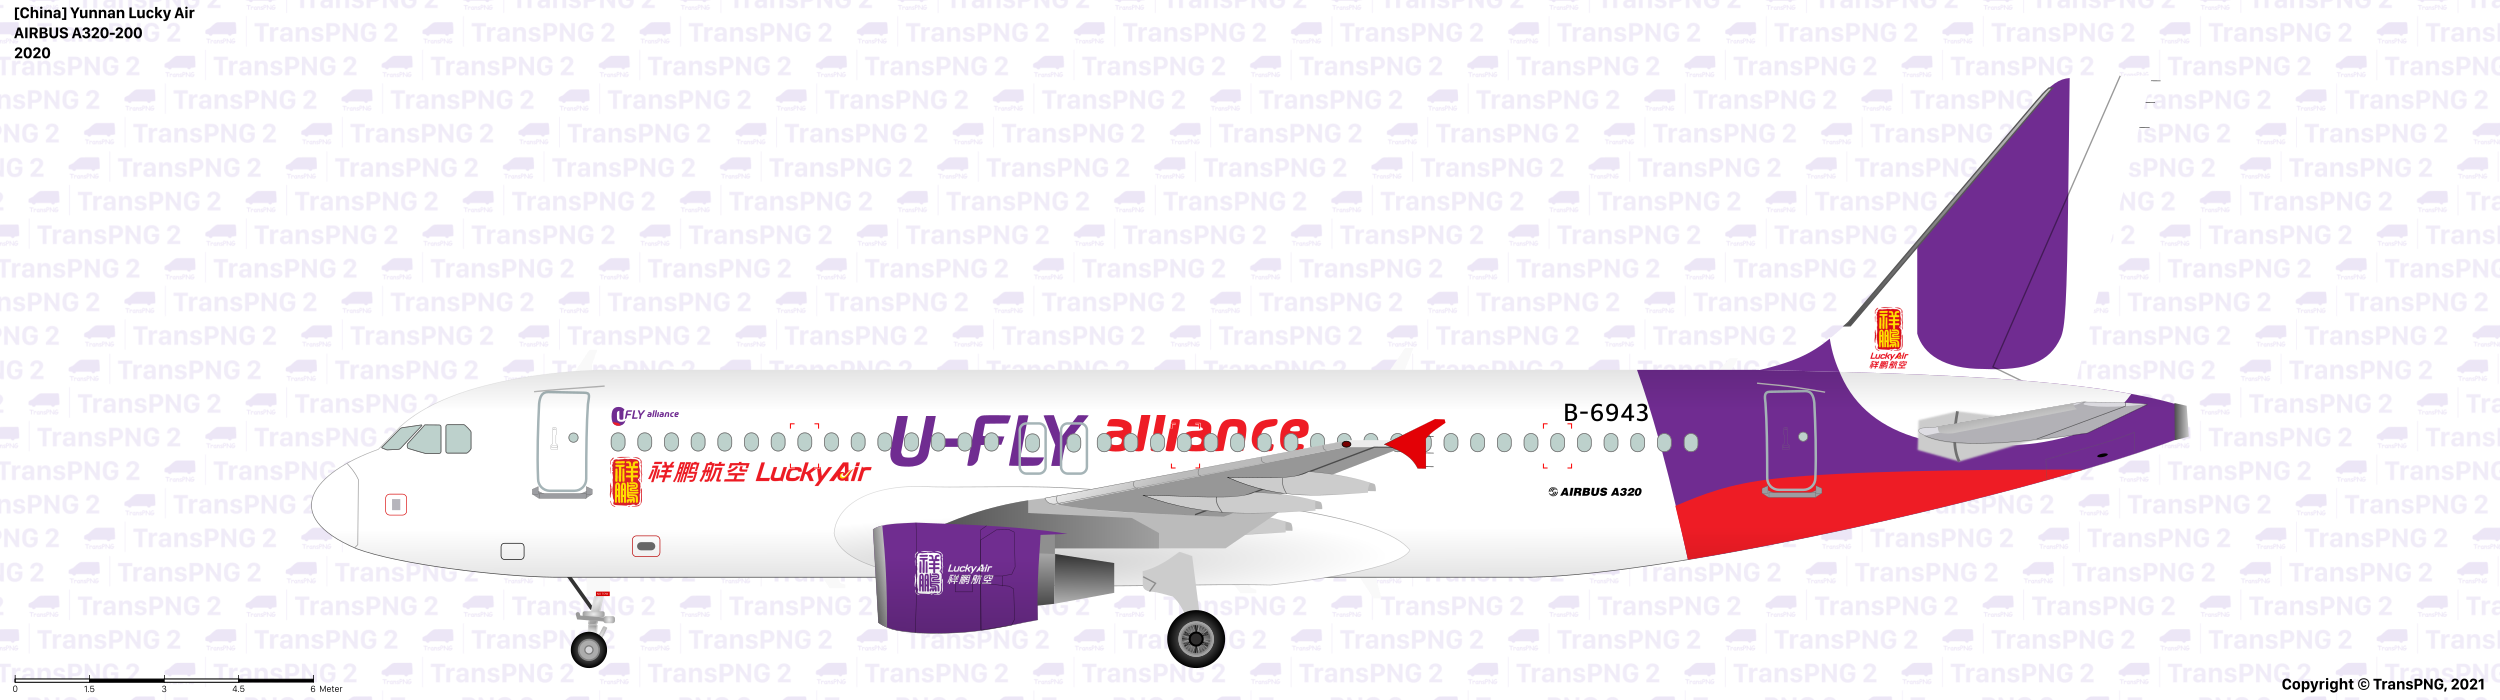 TransPNG.net | 分享世界各地多種交通工具的優秀繪圖 - 飛機 51660886351_882836088e_o